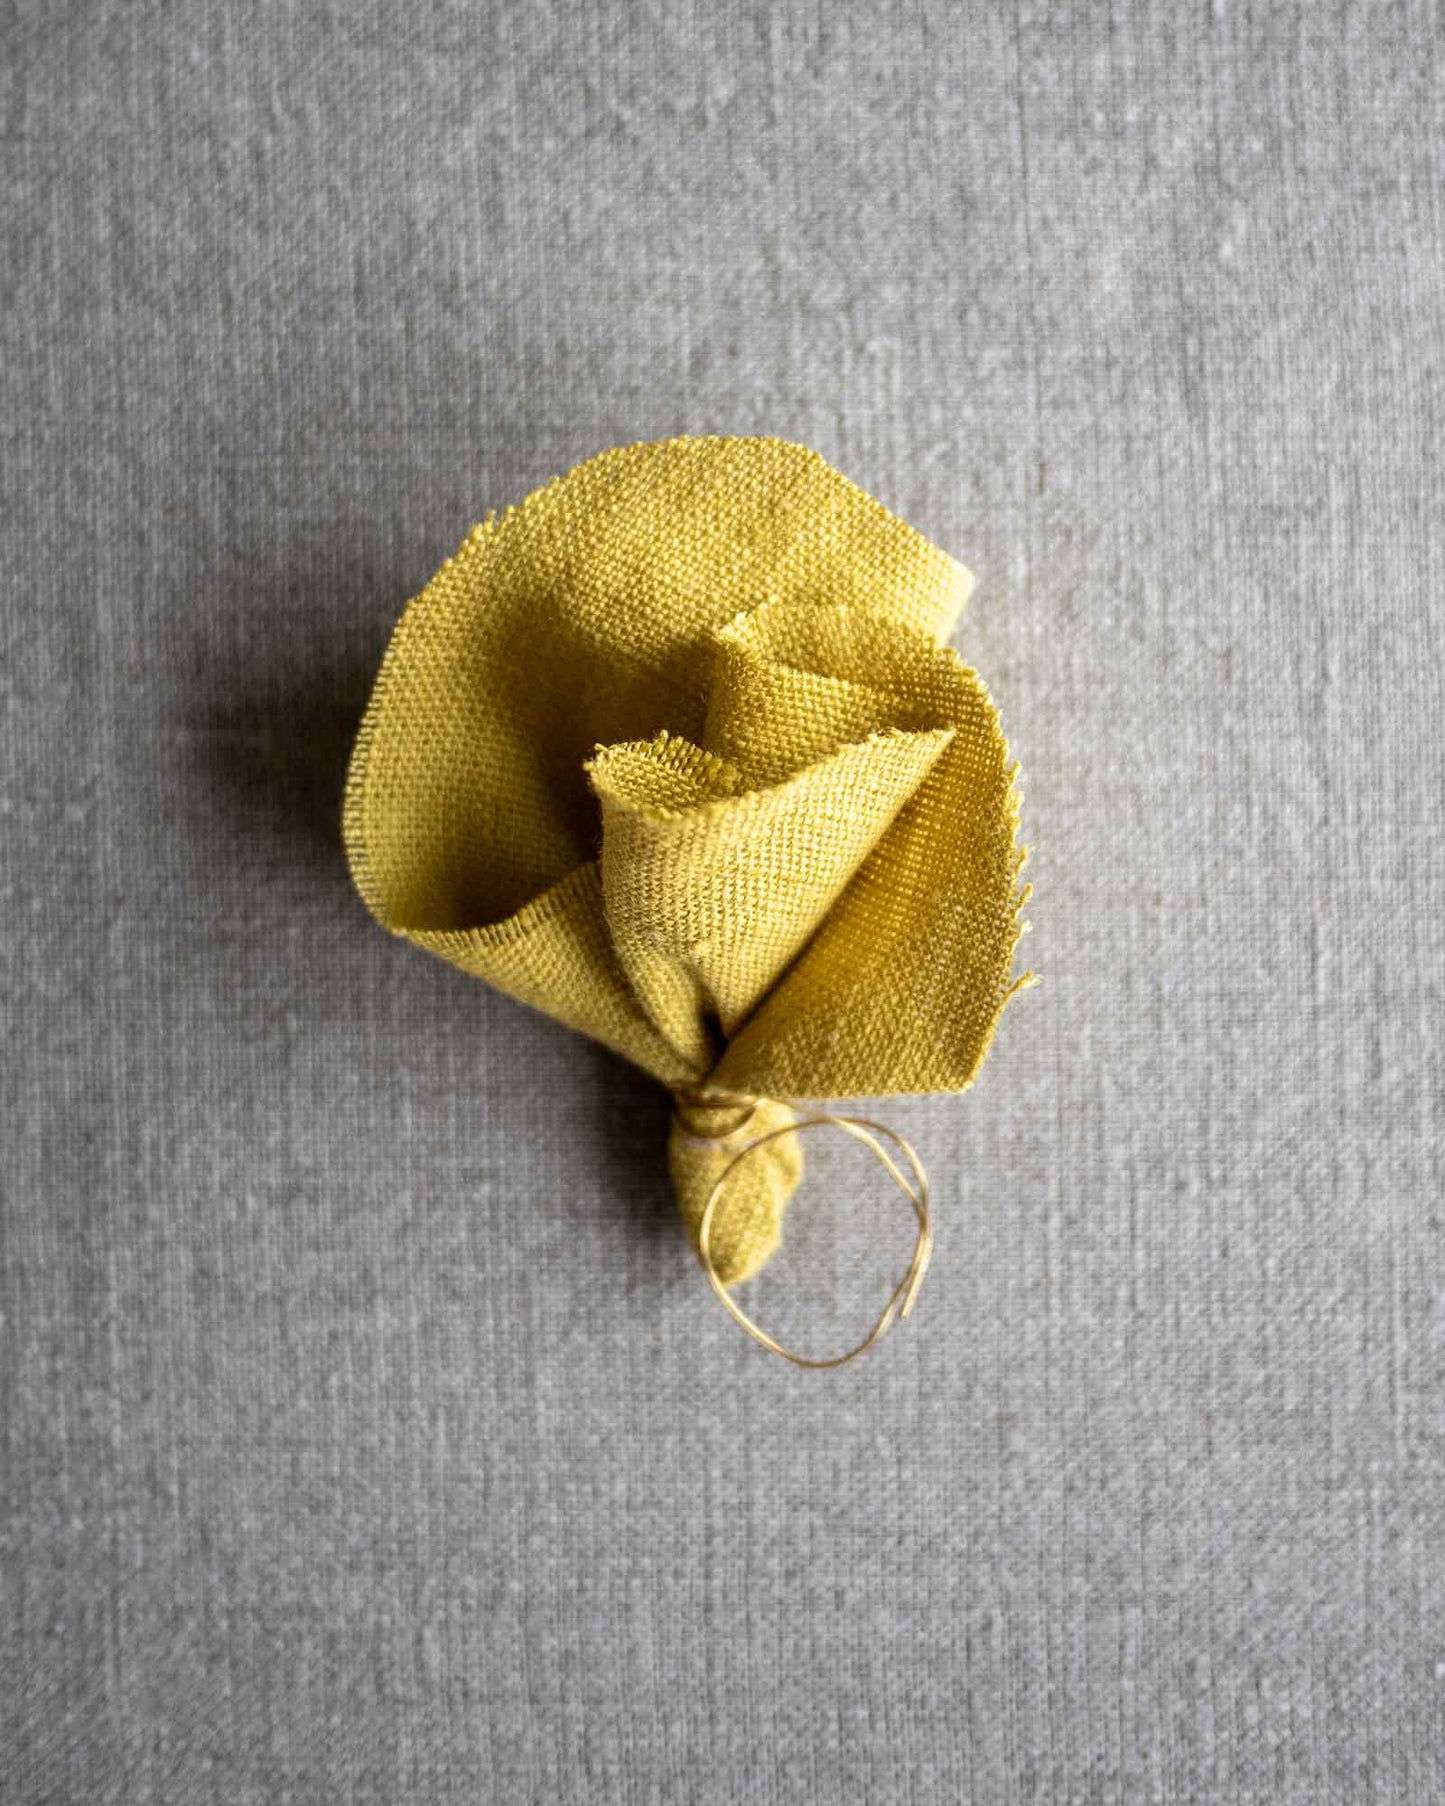 En liten handsydd tygblomma i gult linne ligger på en plan yta.